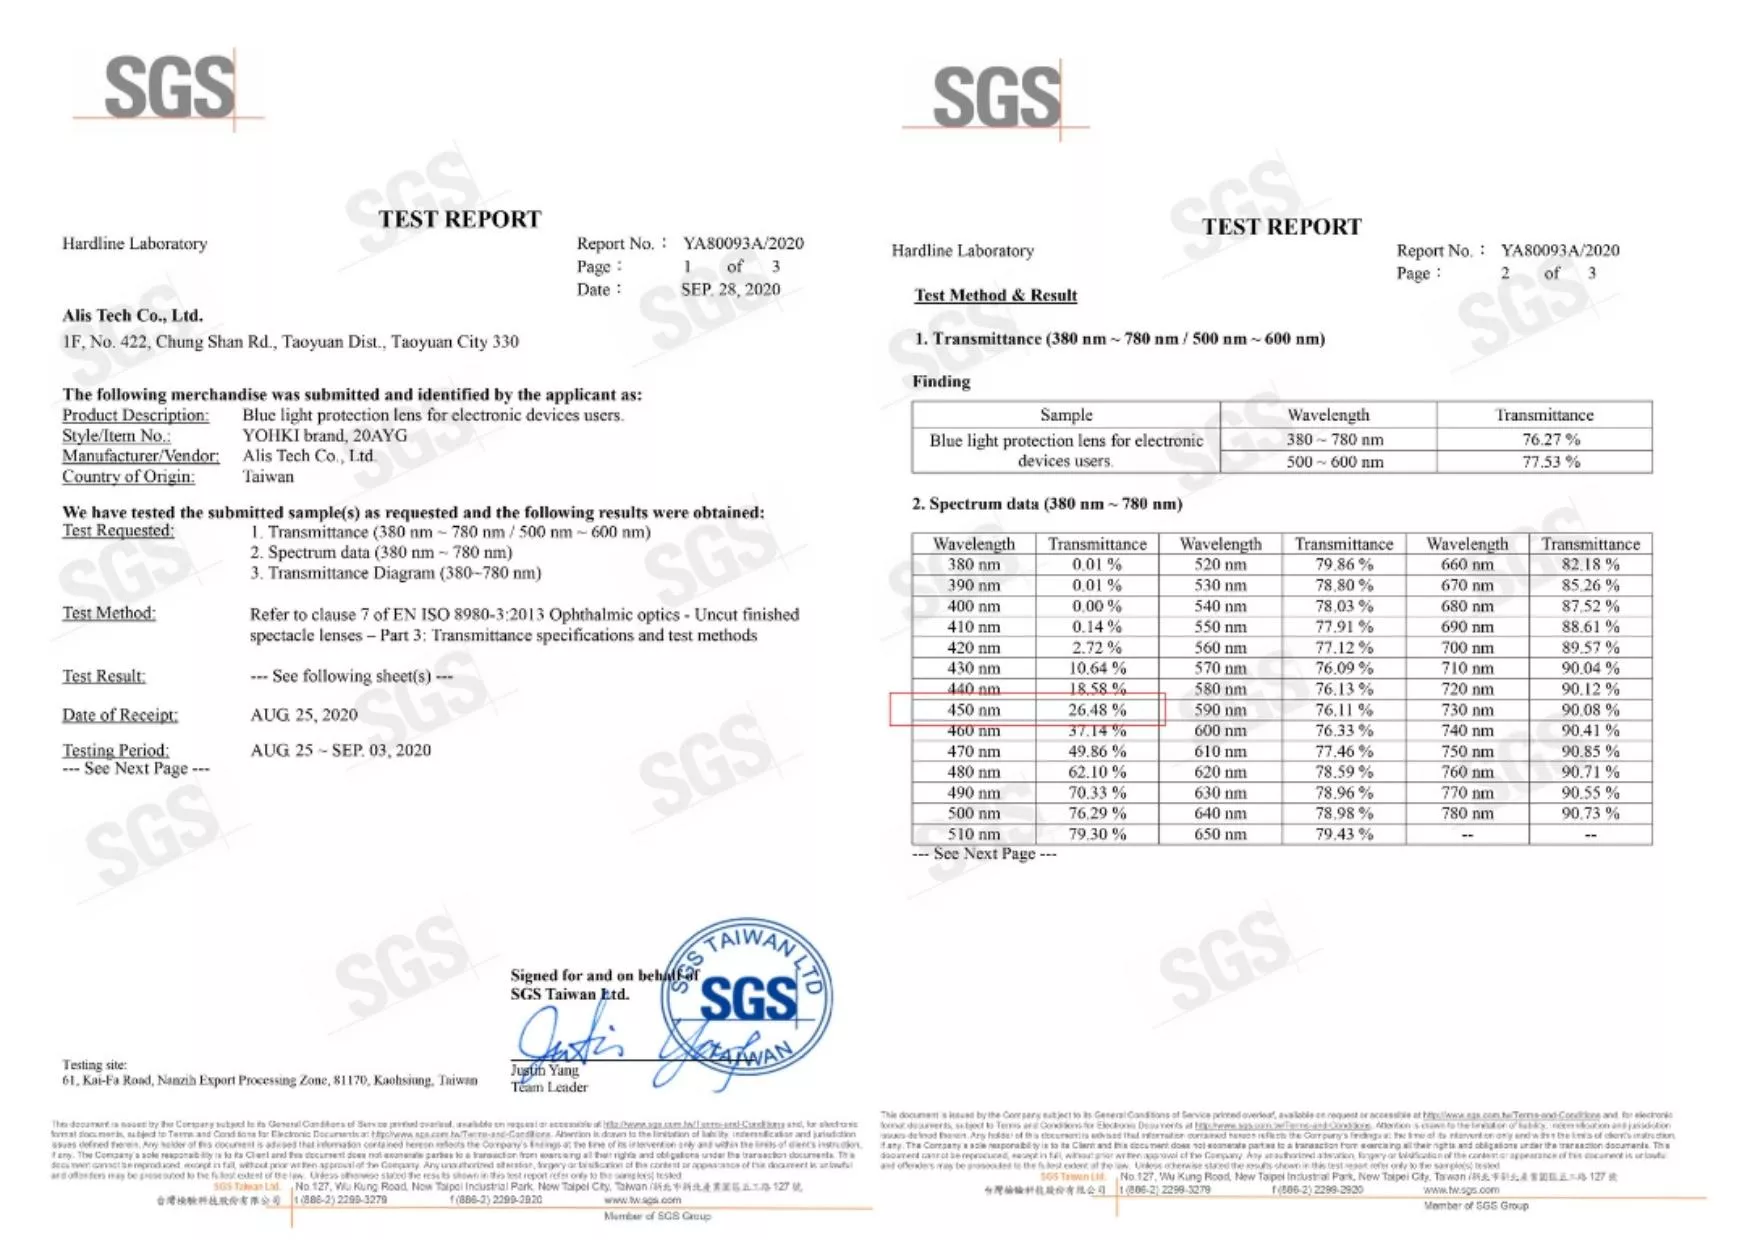 經SGS檢驗在藍光UV450約有73.52%的濾光效果